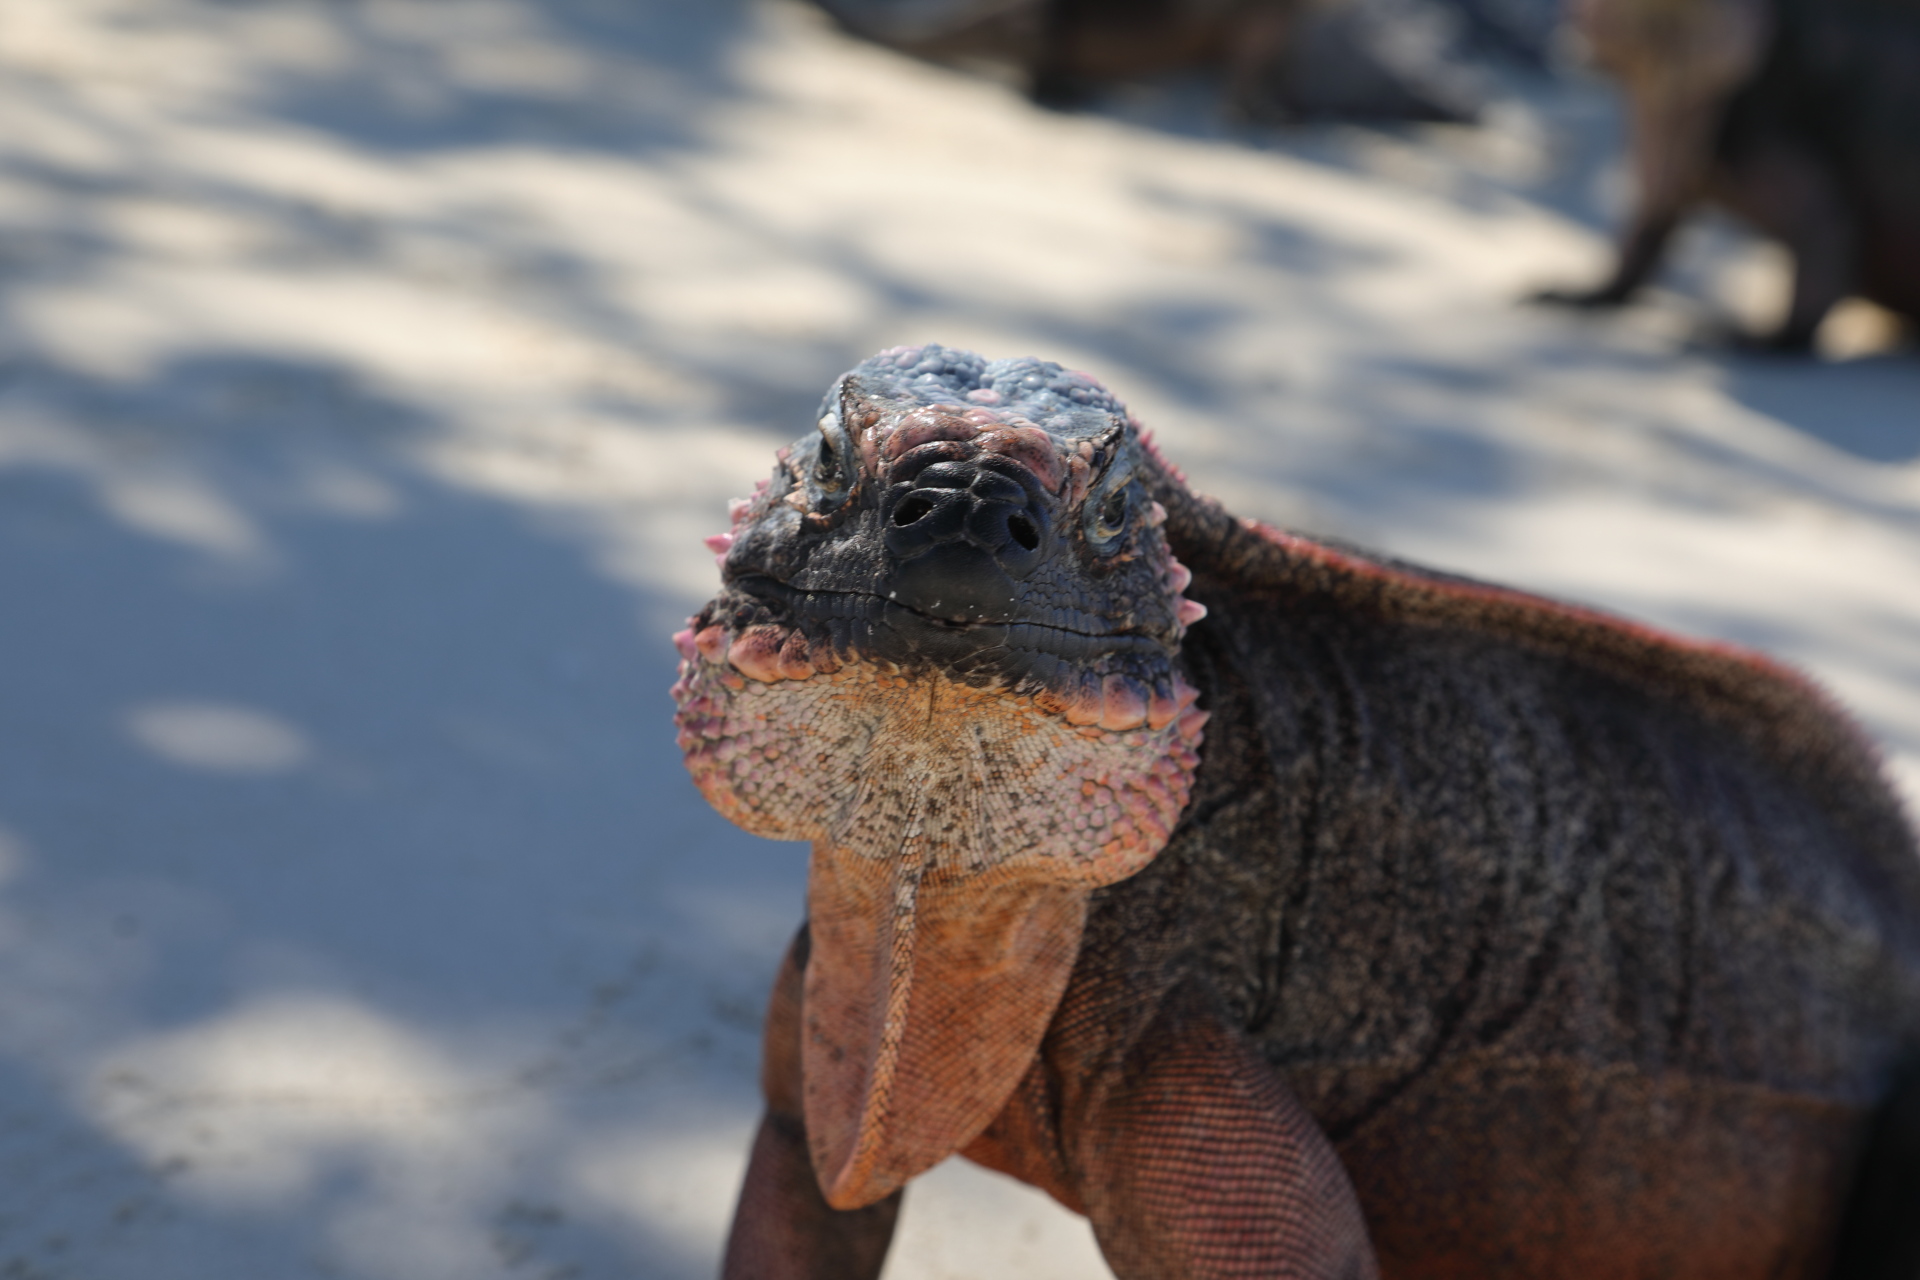 Close-up of an Iguana (Jan 29, 2023)